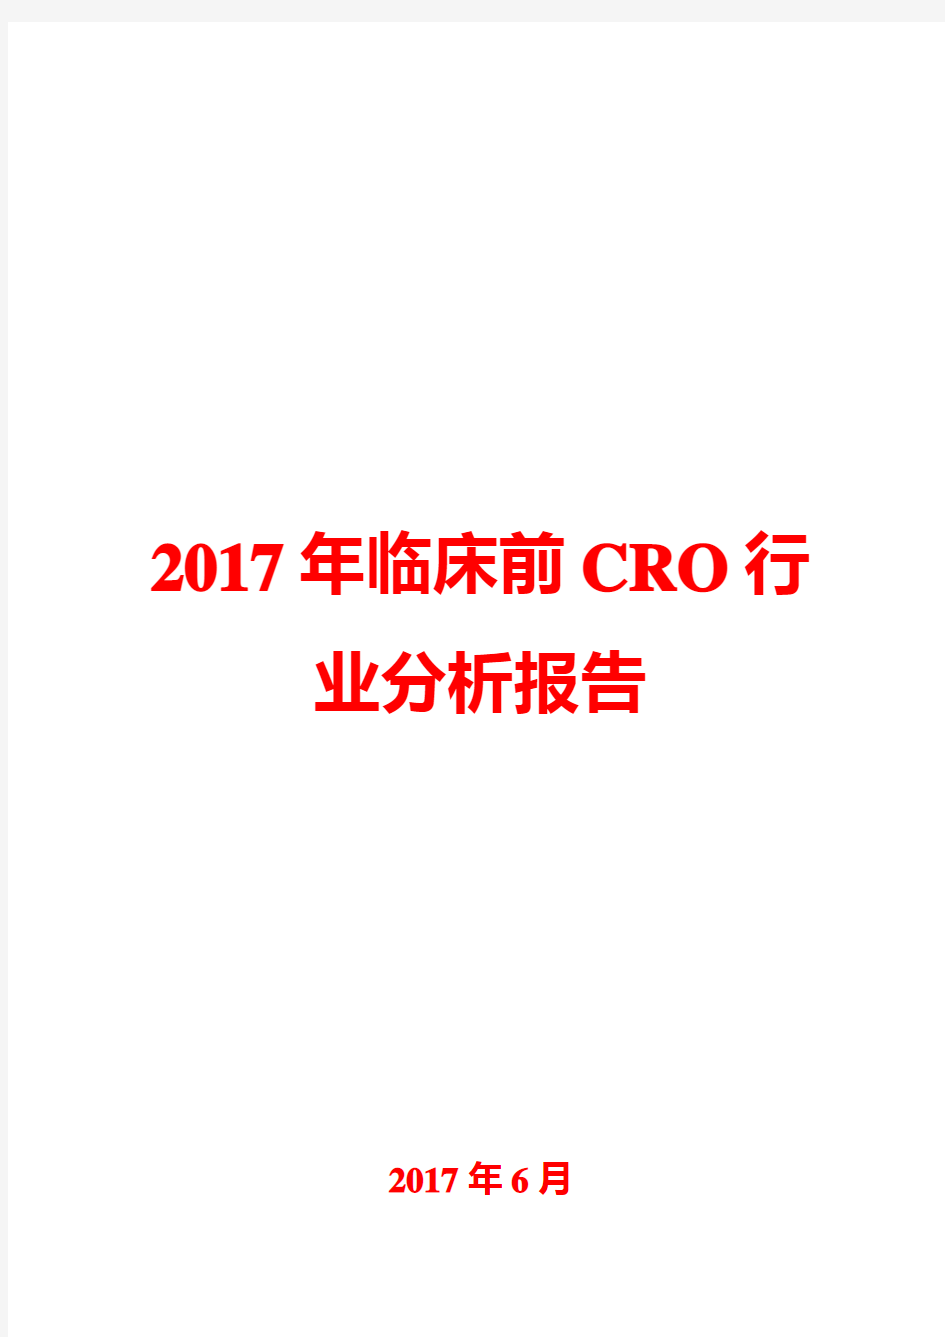 2017年临床前CRO行业分析报告